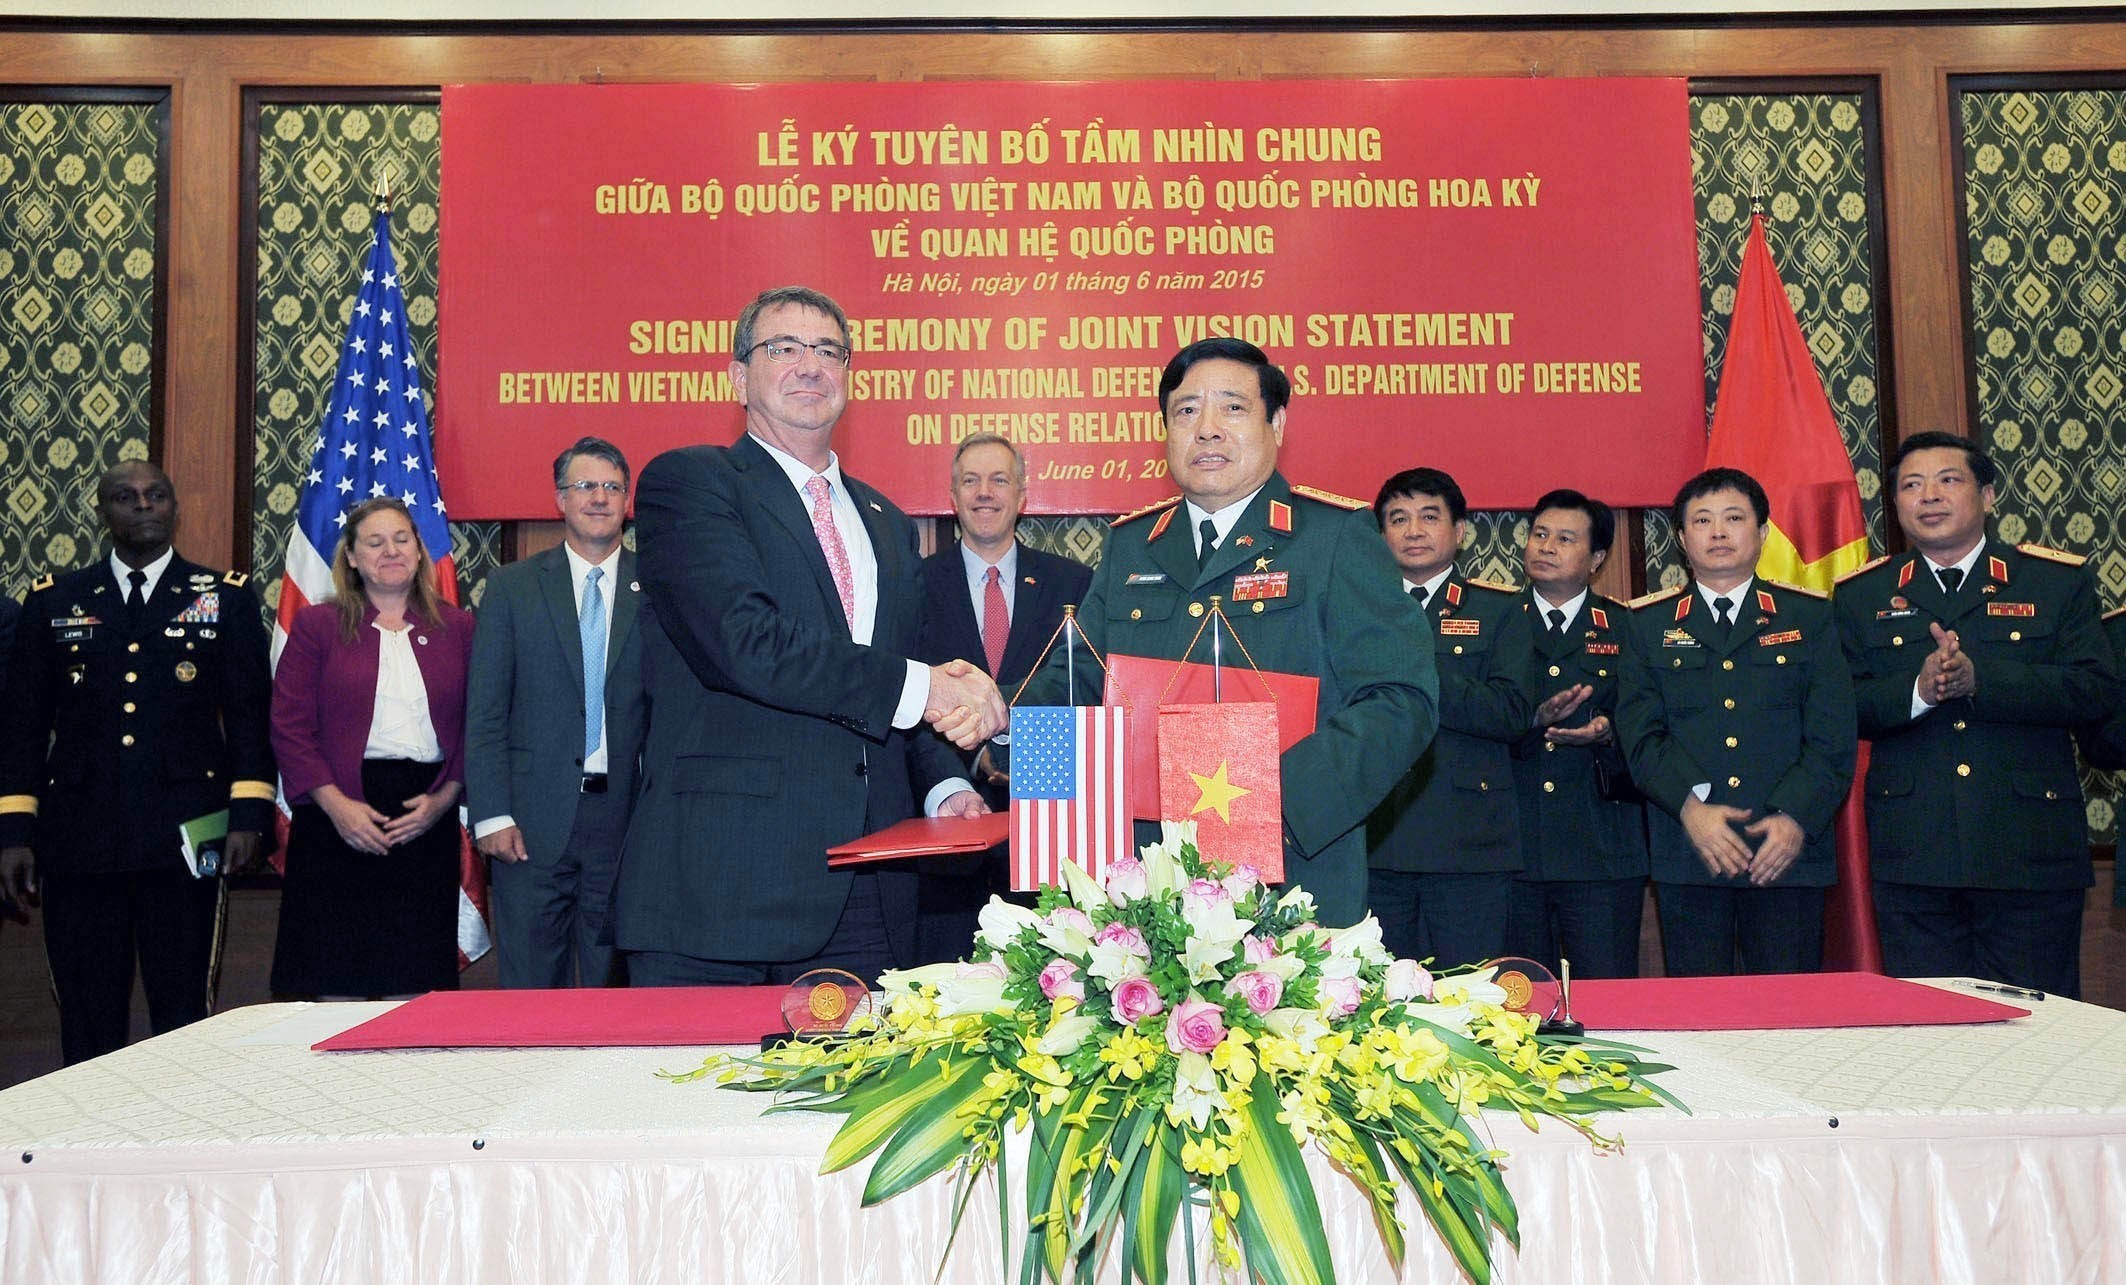 Trong chuyến thăm chính thức Việt Nam, sáng 1/6/2015, tại Hà Nội, Bộ trưởng Quốc phòng Hoa Kỳ Ashton Carter và Bộ trưởng Quốc phòng Phùng Quang Thanh ký Tuyên bố Tầm nhìn chung giữa Bộ Quốc phòng hai nước về quan hệ quốc phòng. (Ảnh: Trọng Đức/TTXVN)